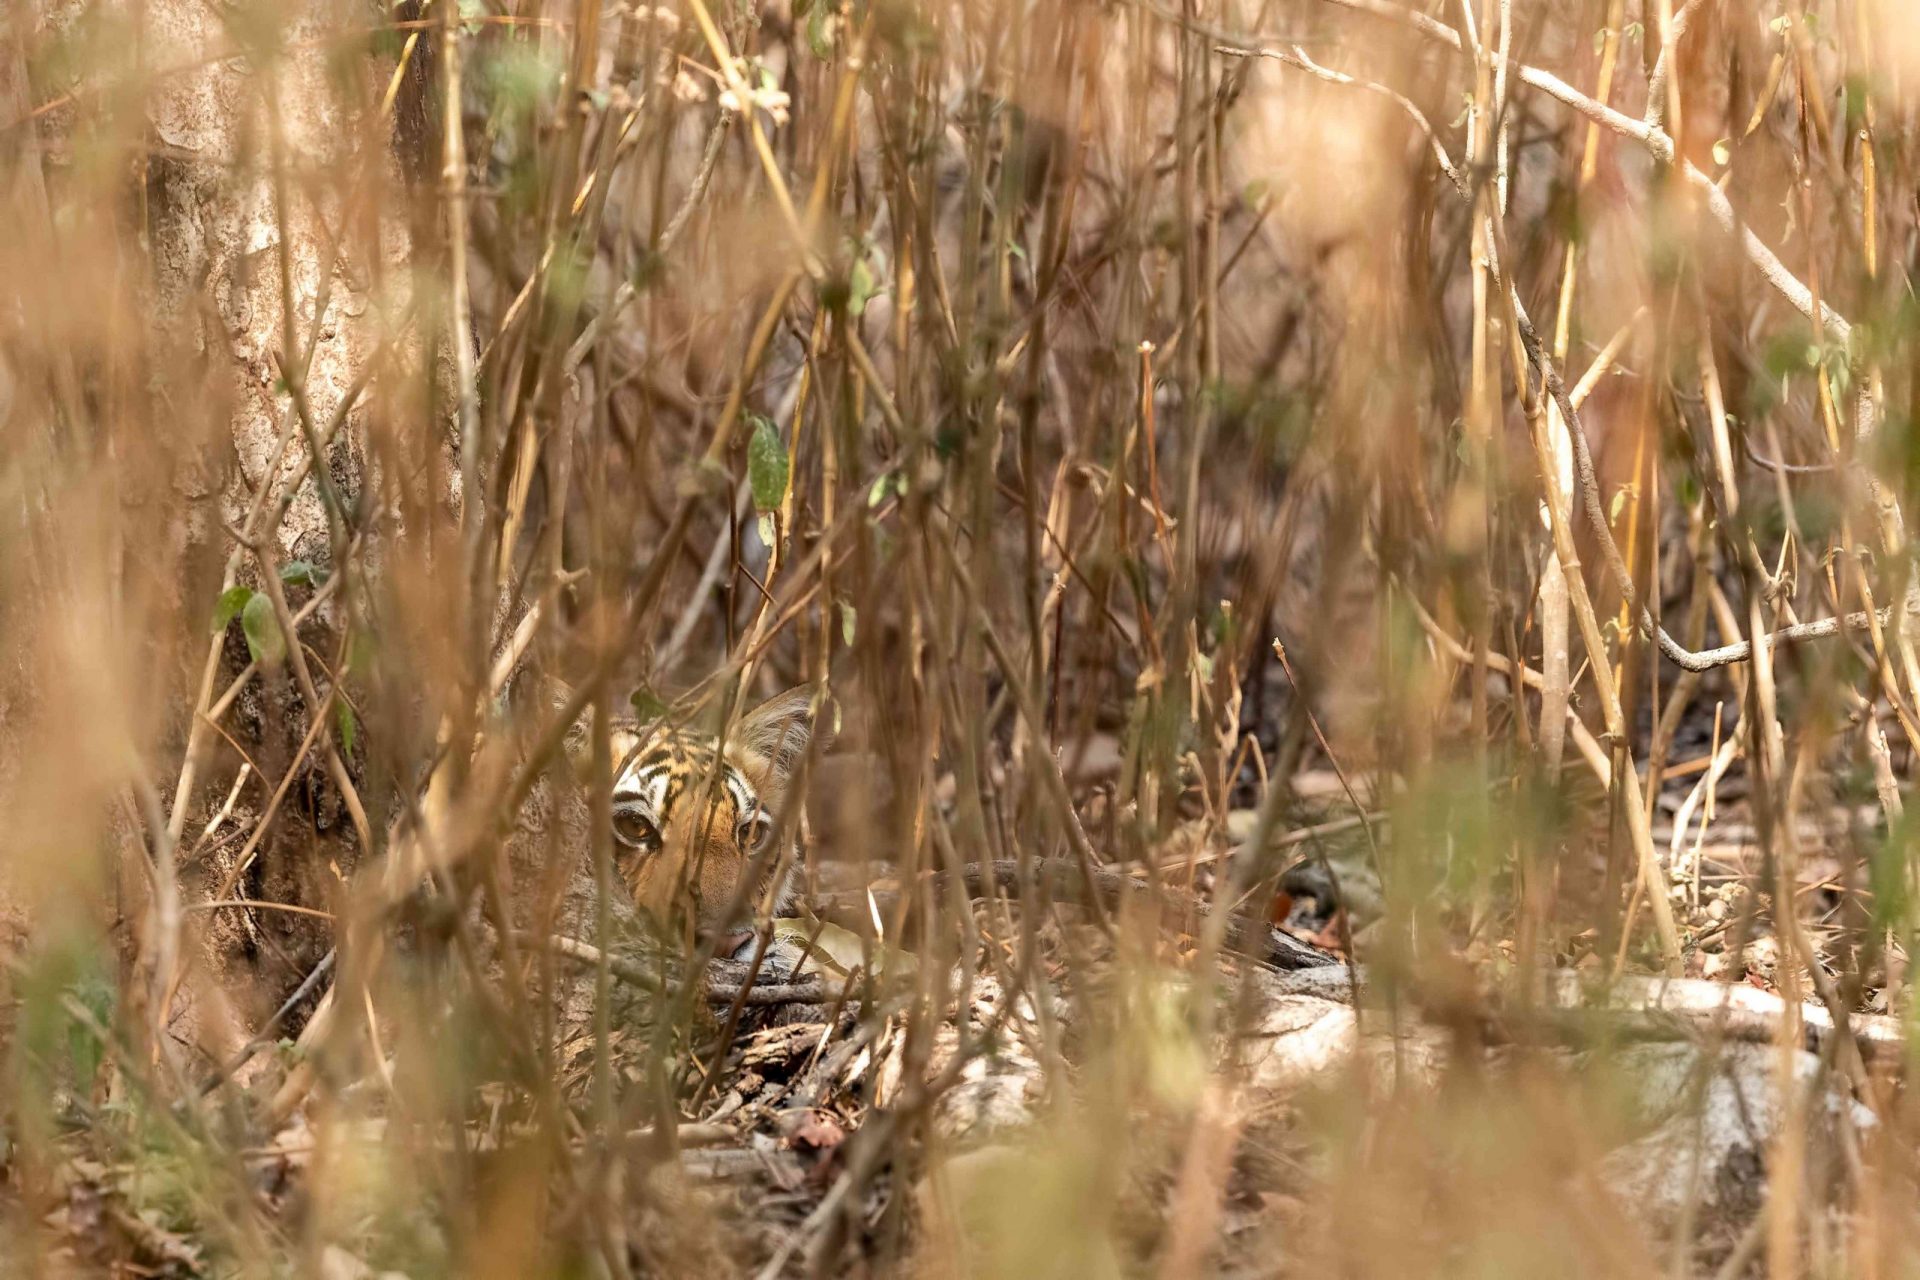 Tigre escondido en un arbusto. Sólo una pequeña parte de la cara es visible tras los tallos de los matorrales tropicales